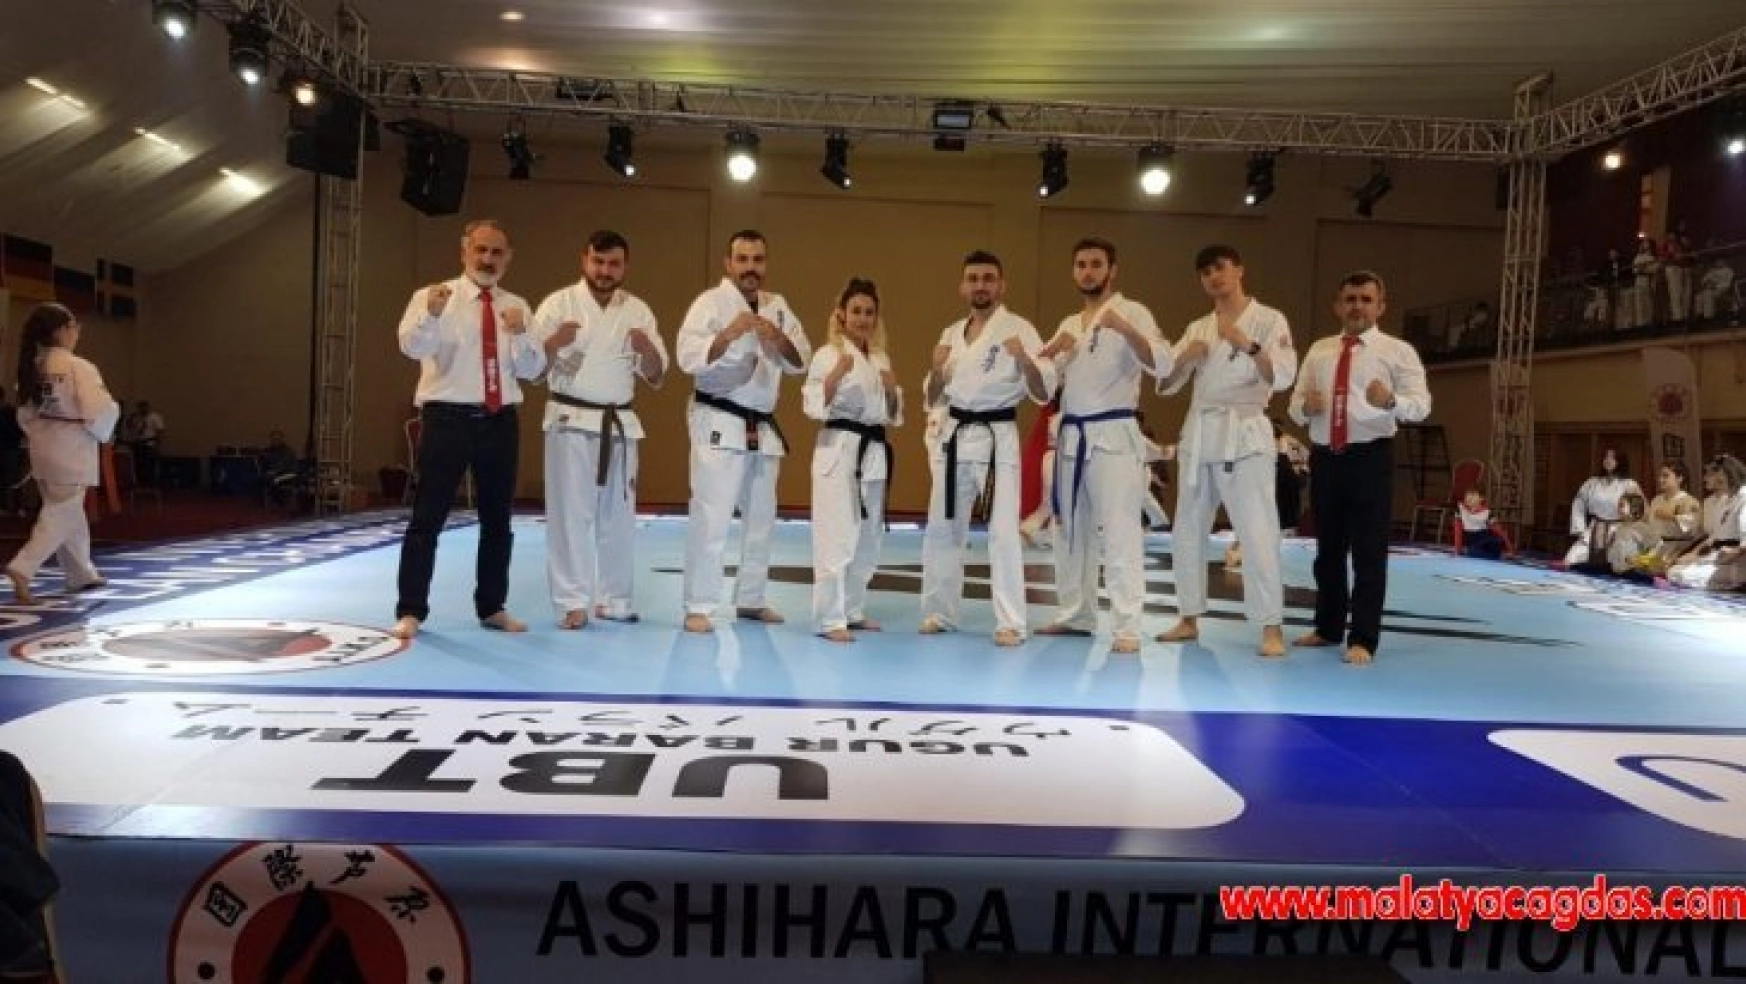 Pursaklar Belediye Spor Kulübü sporcuları ilk kez Avrupa şampiyonu oldu